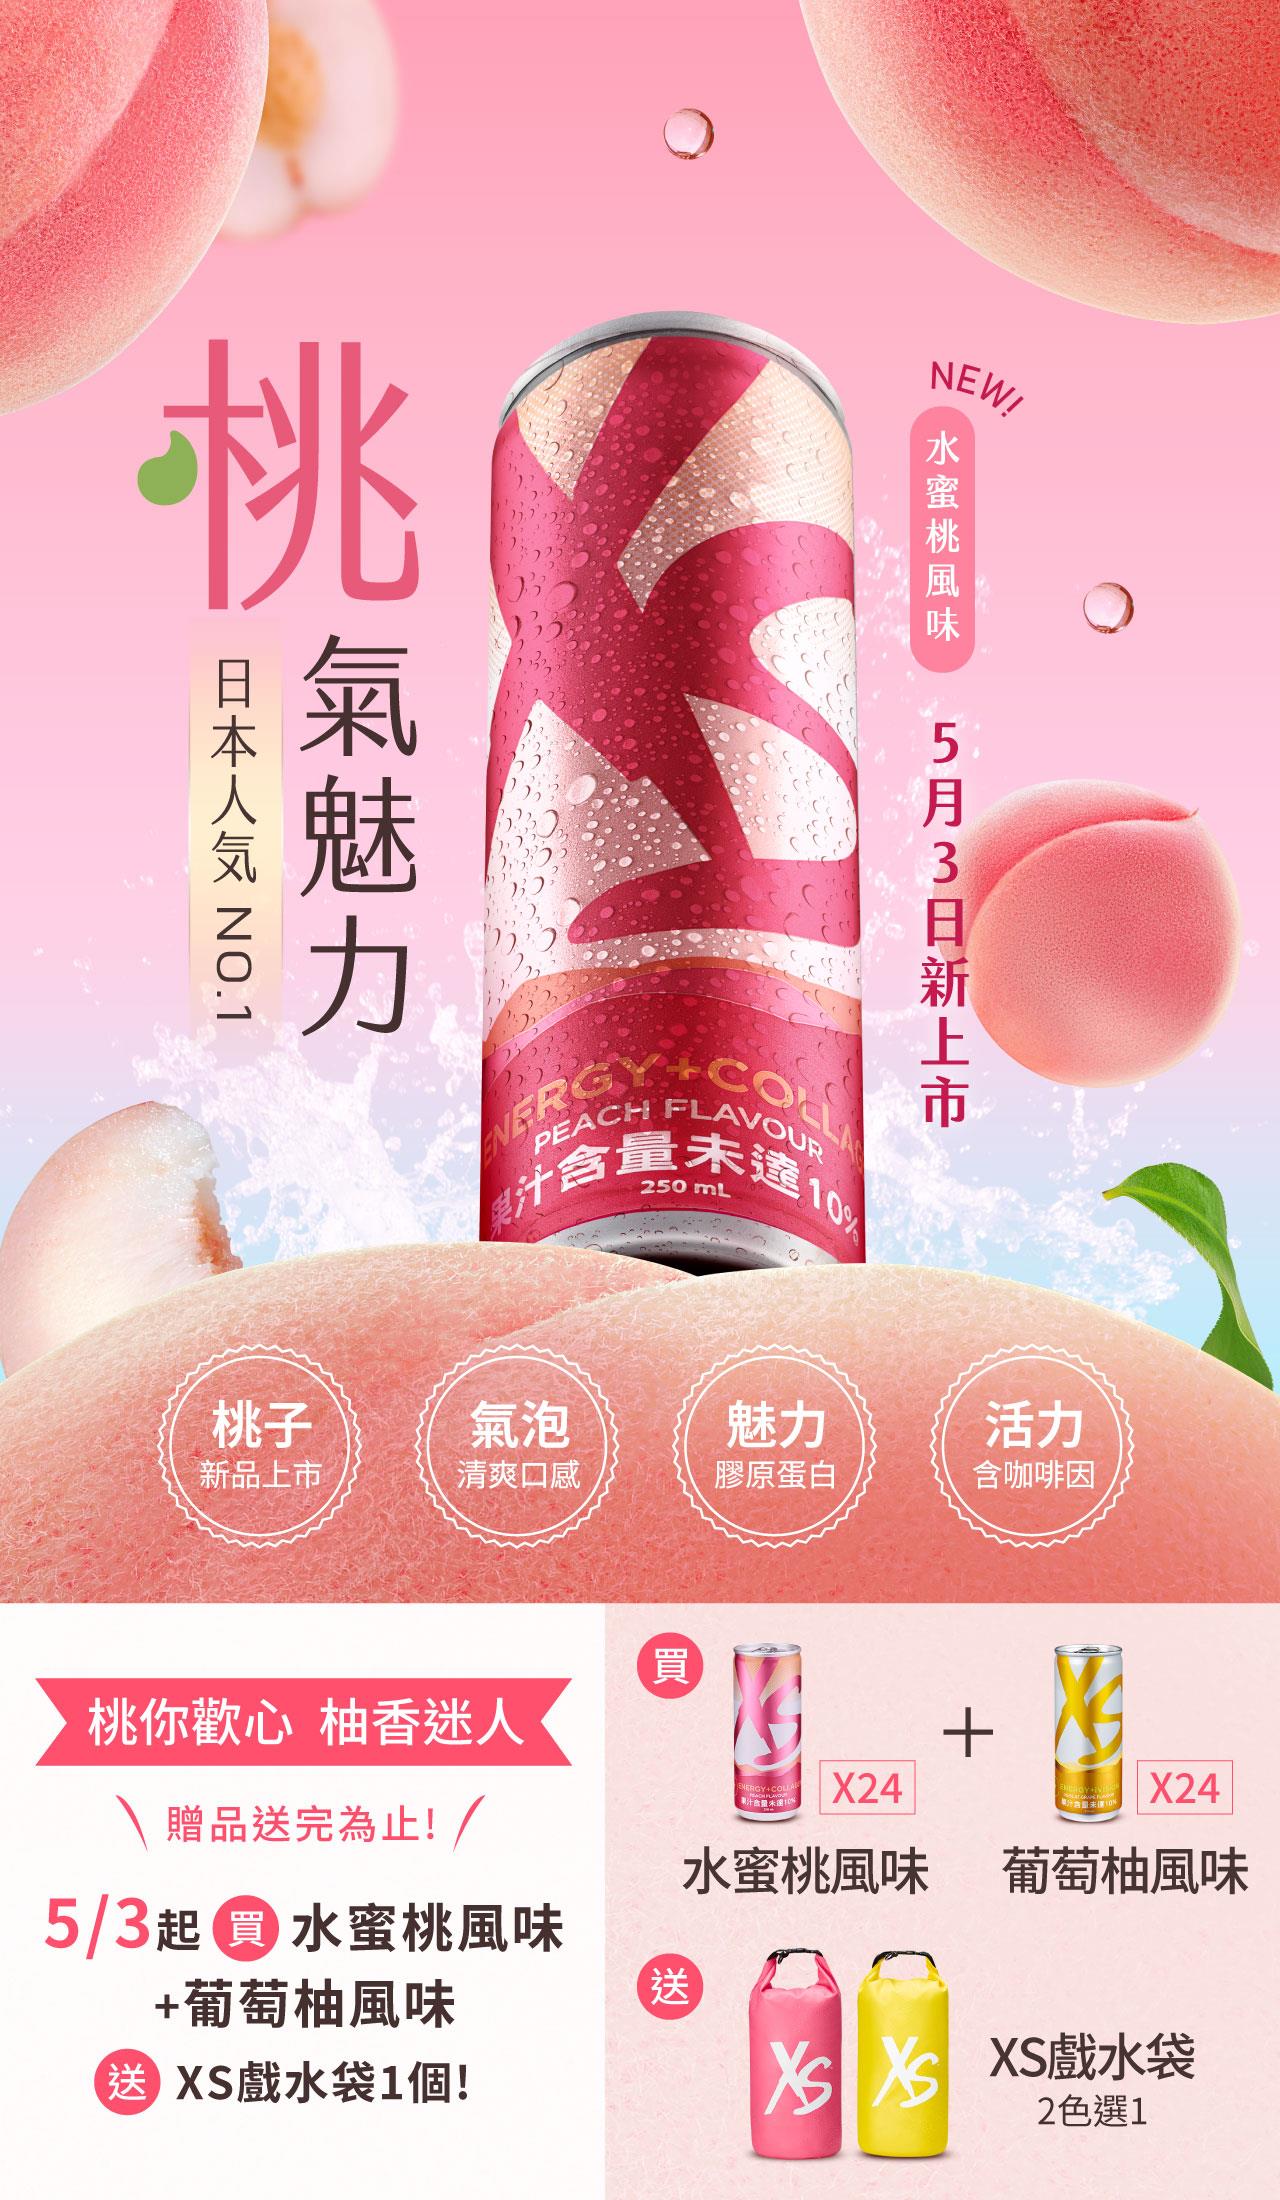 桃氣魅力 XS水蜜桃風味 5/3新上市